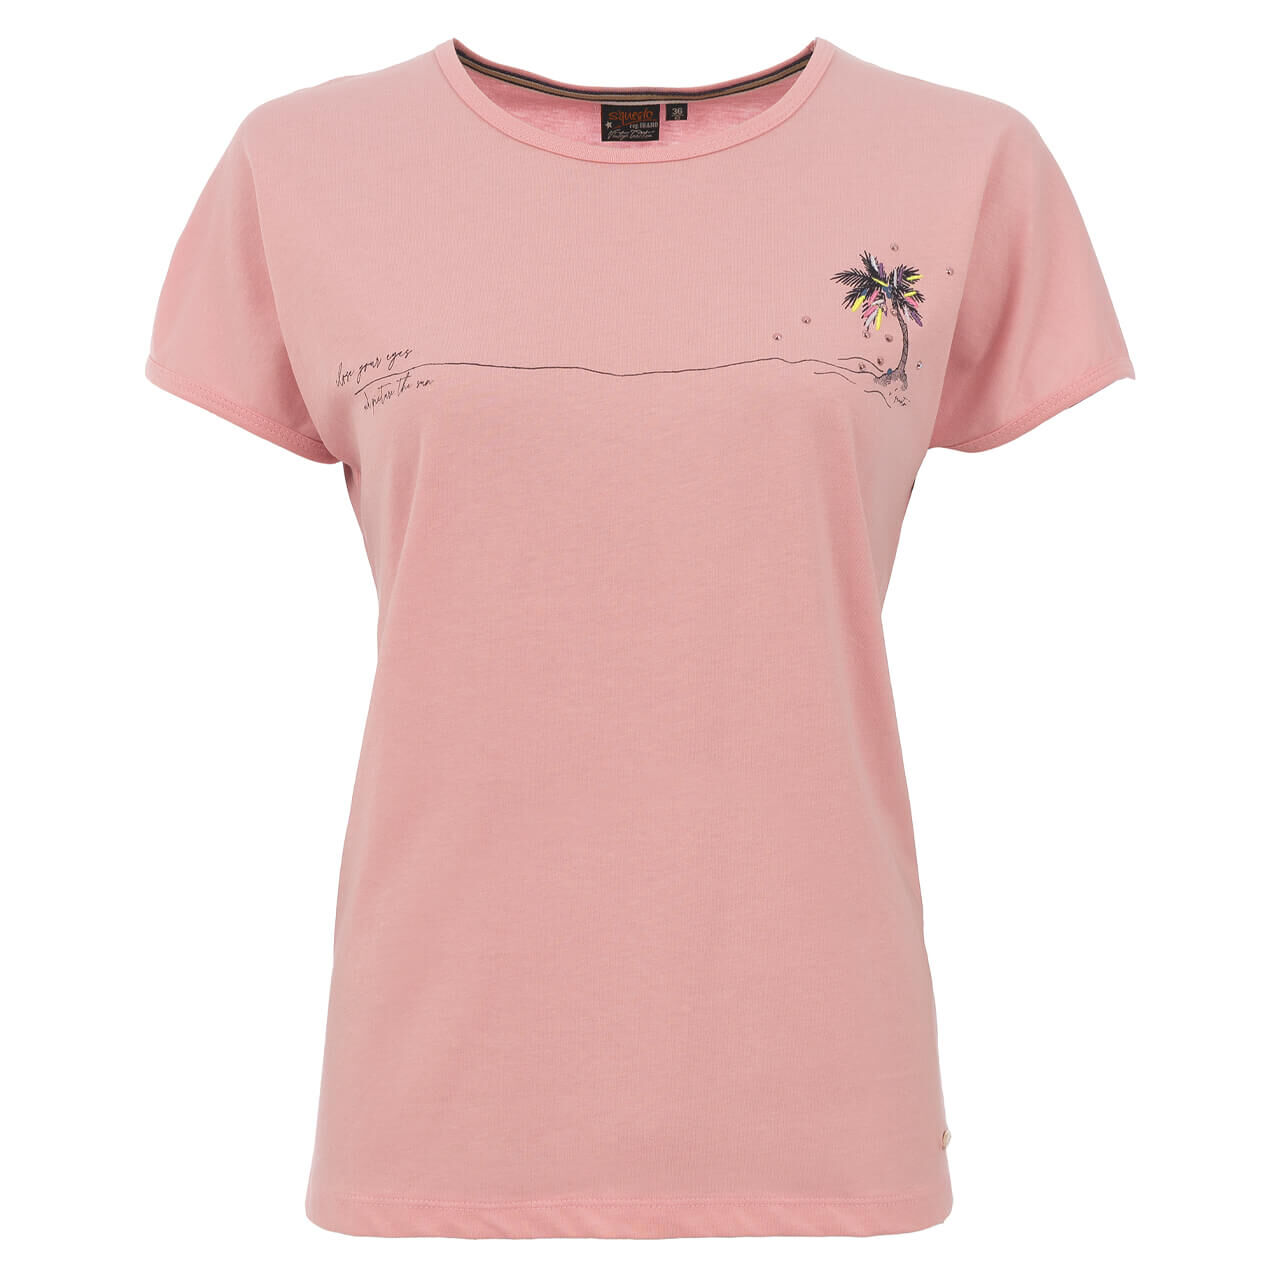 Soquesto T-Shirt für Damen in Rosa mit Print, FarbNr.: 1000